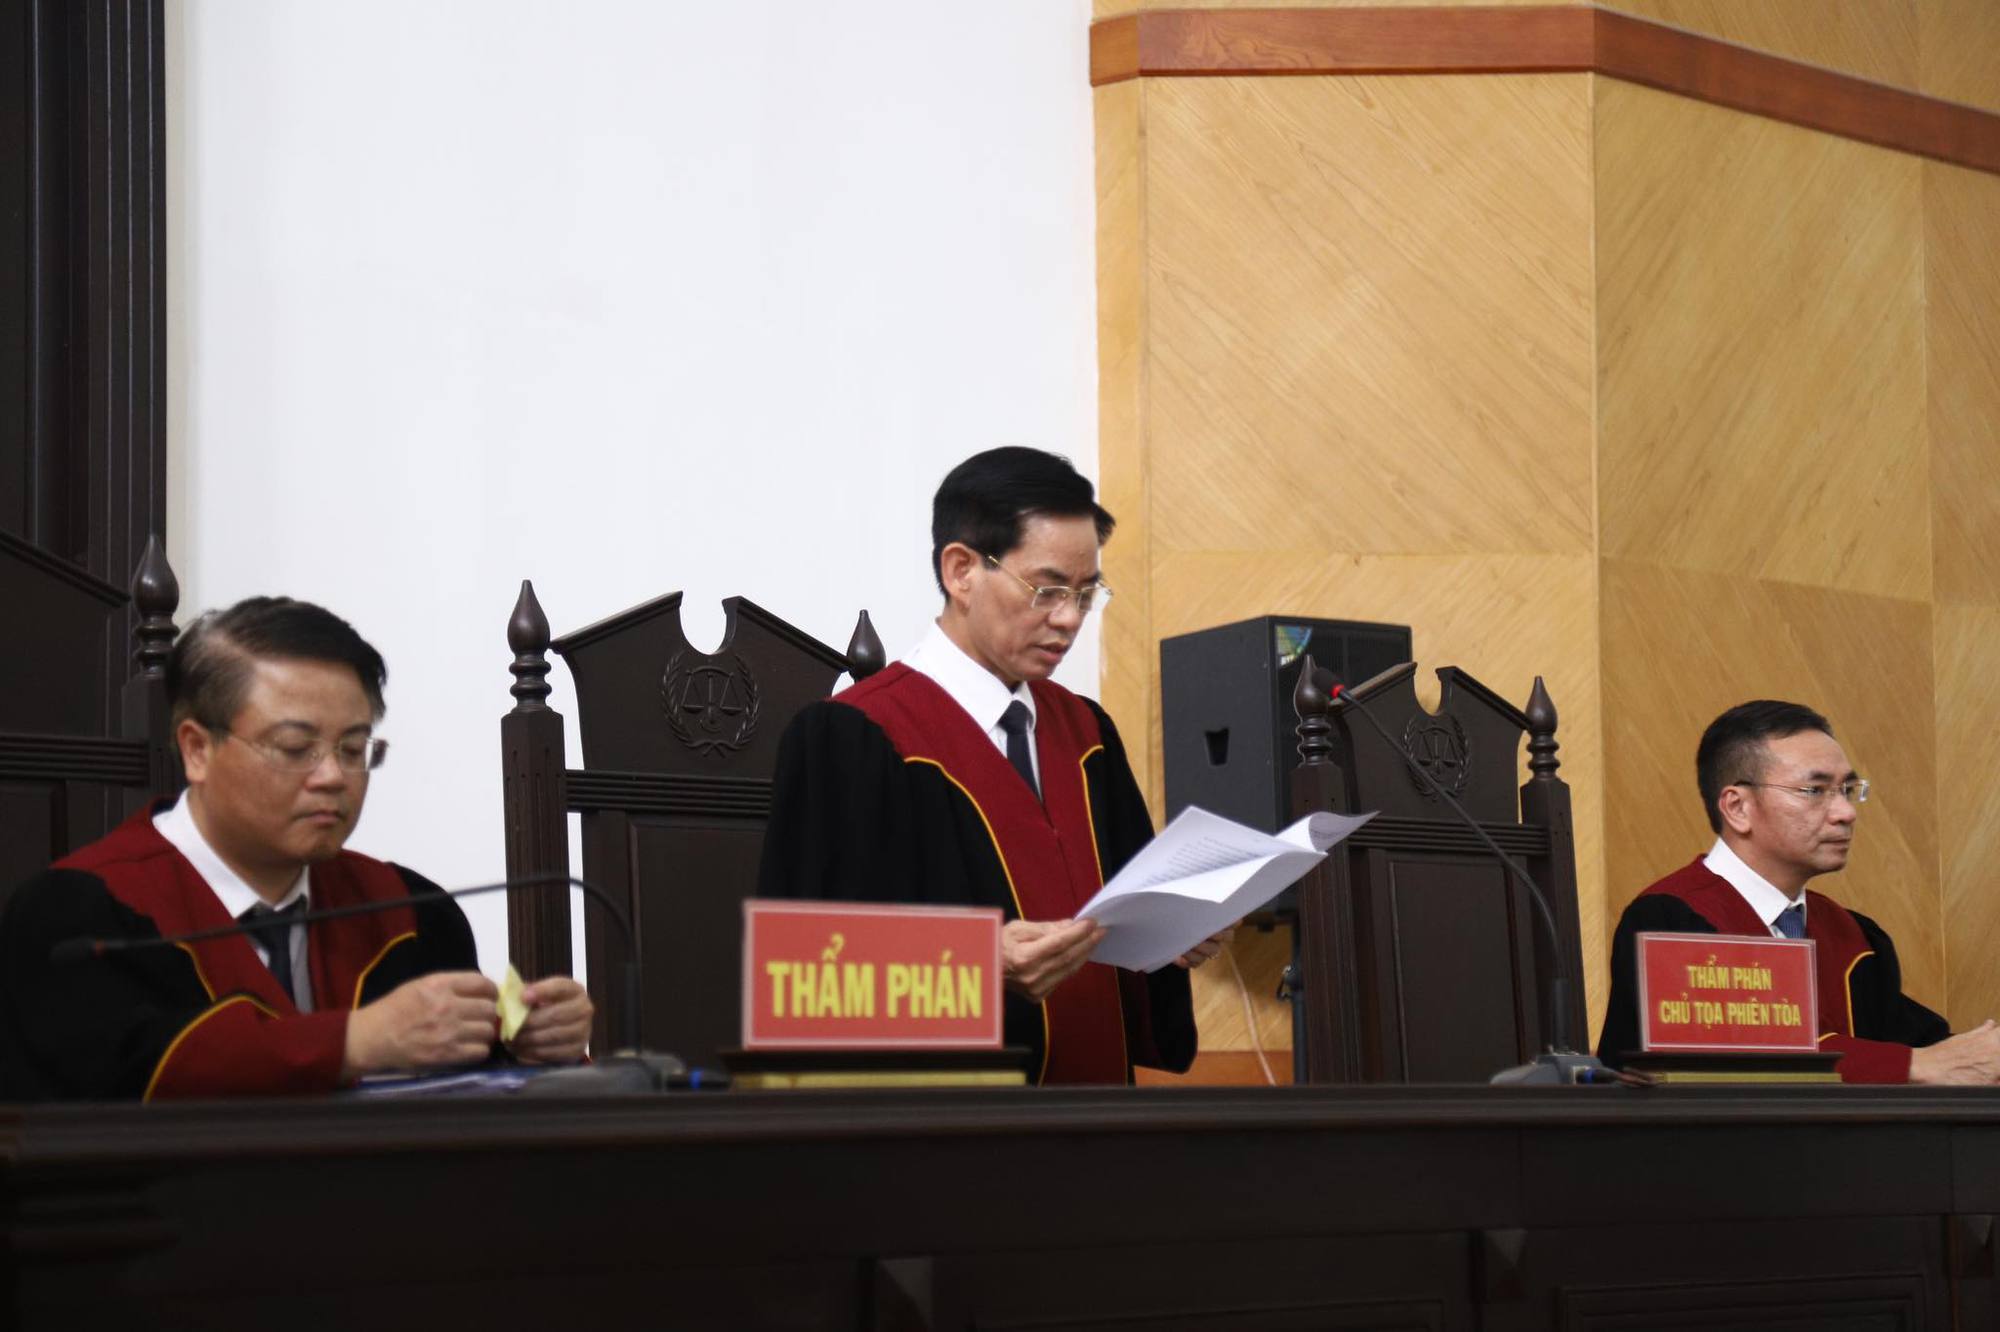 Cựu Chủ tịch Hà Nội được giảm 3 năm tù trong vụ chế phẩm làm sạch nước - Ảnh 1.